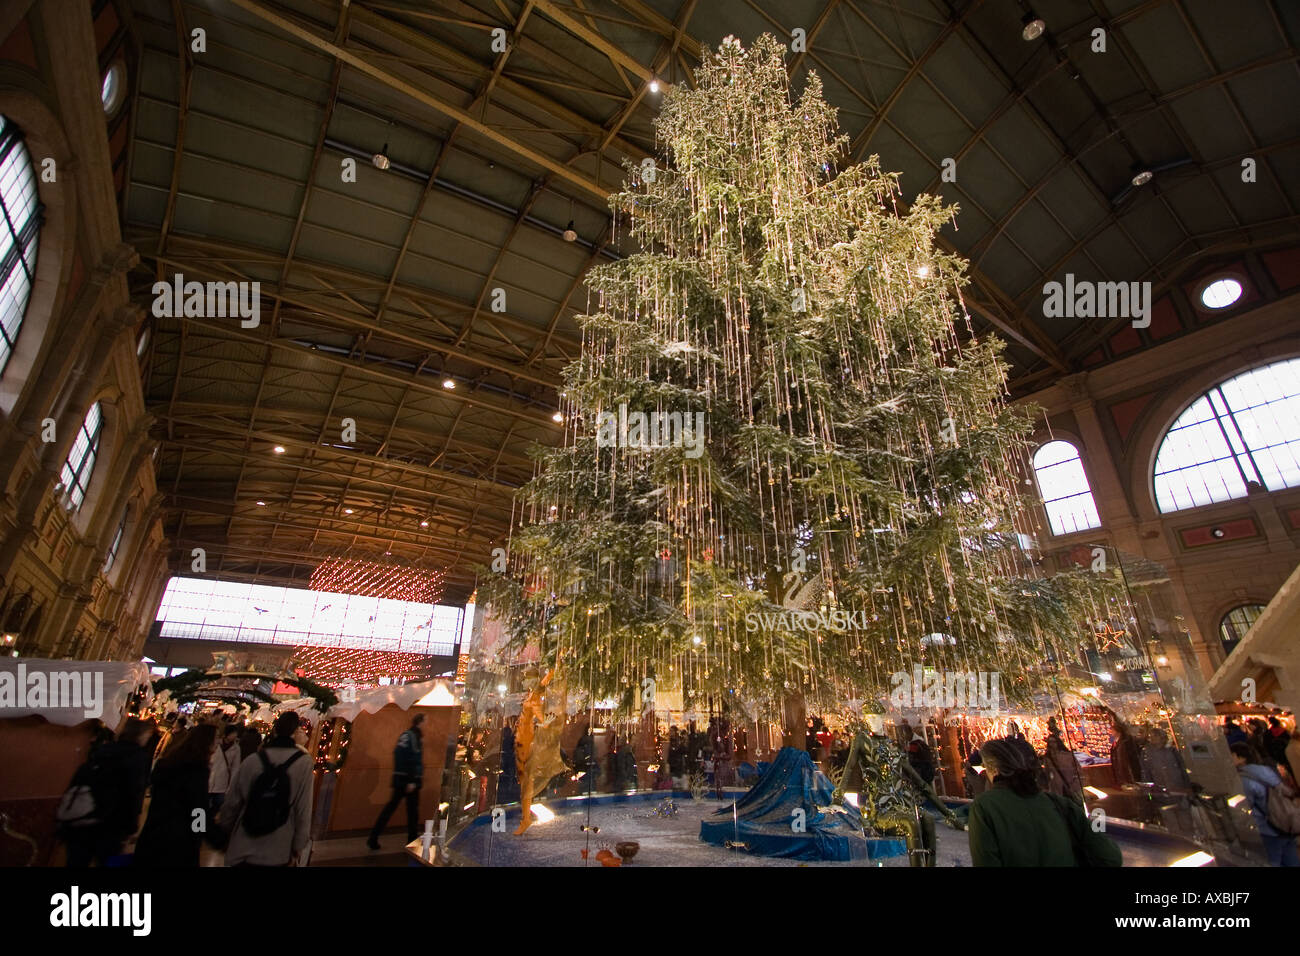 Schweiz Zürich Hauptbahnhof Beleuchtung Weihnachten Weihnachtsbaum aus  Sawarowski mit Stockfotografie - Alamy